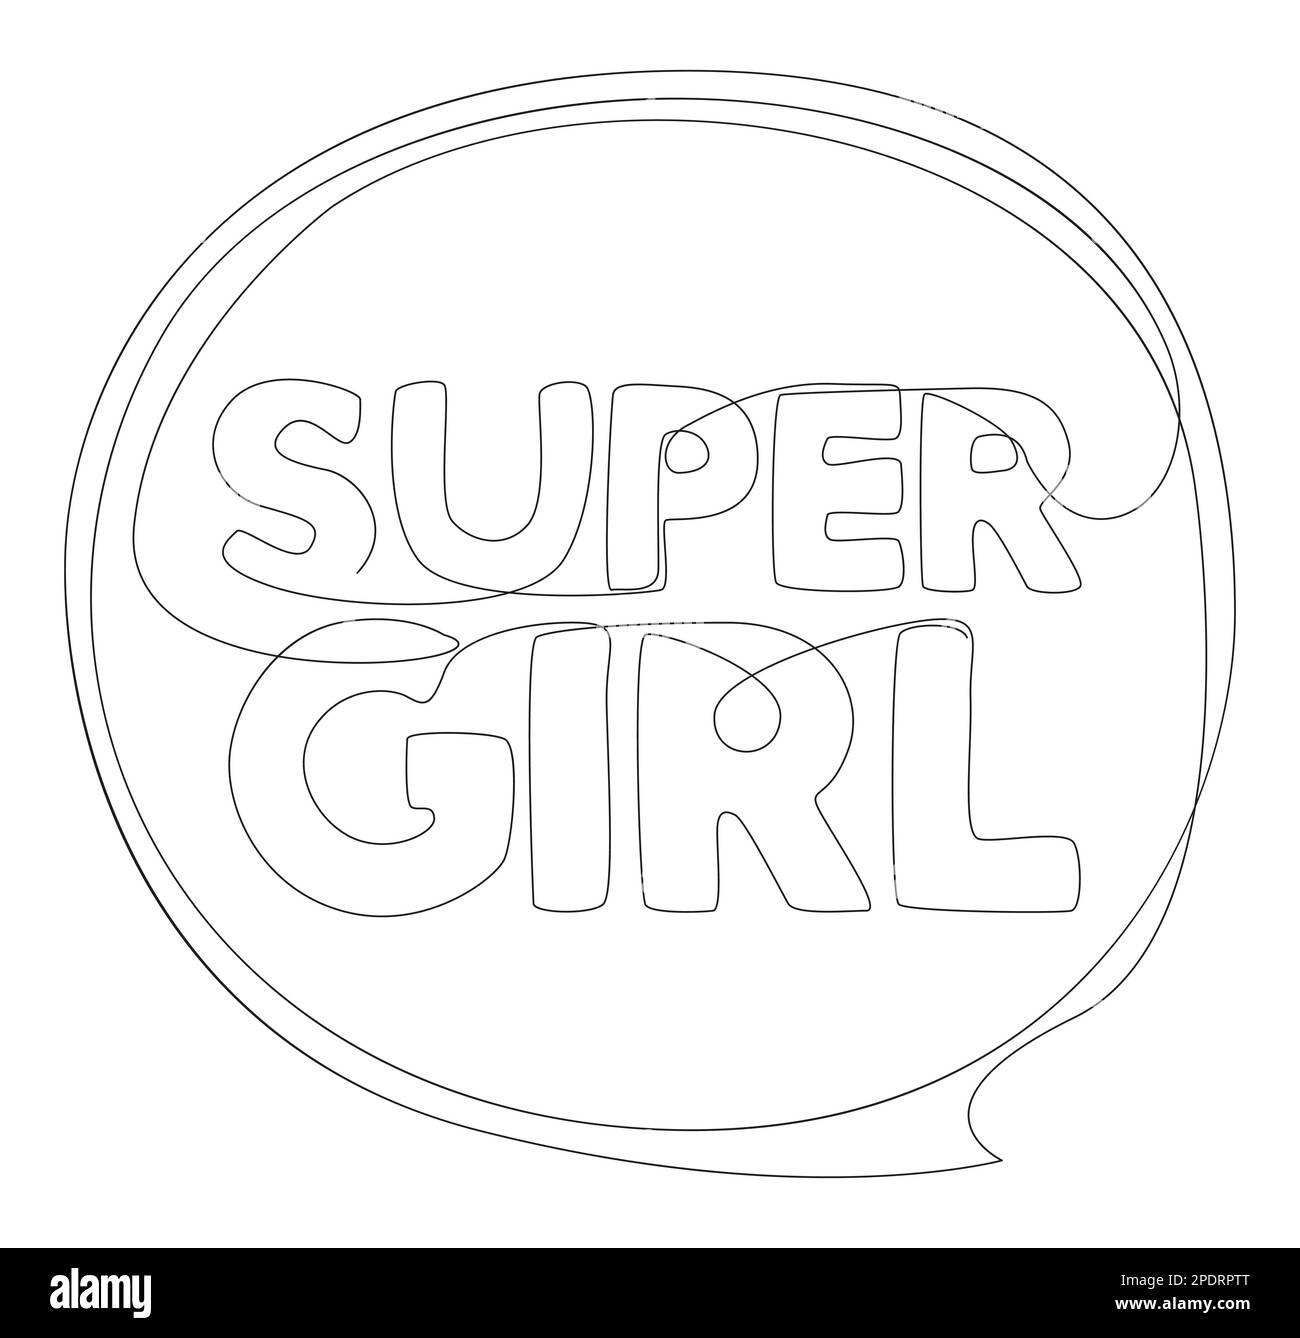 Eine durchgehende Sprechblase mit Super Girl-Text. Vektorkonzept zur Darstellung dünner Linien. Kontur Zeichnen kreativer Ideen. Stock Vektor